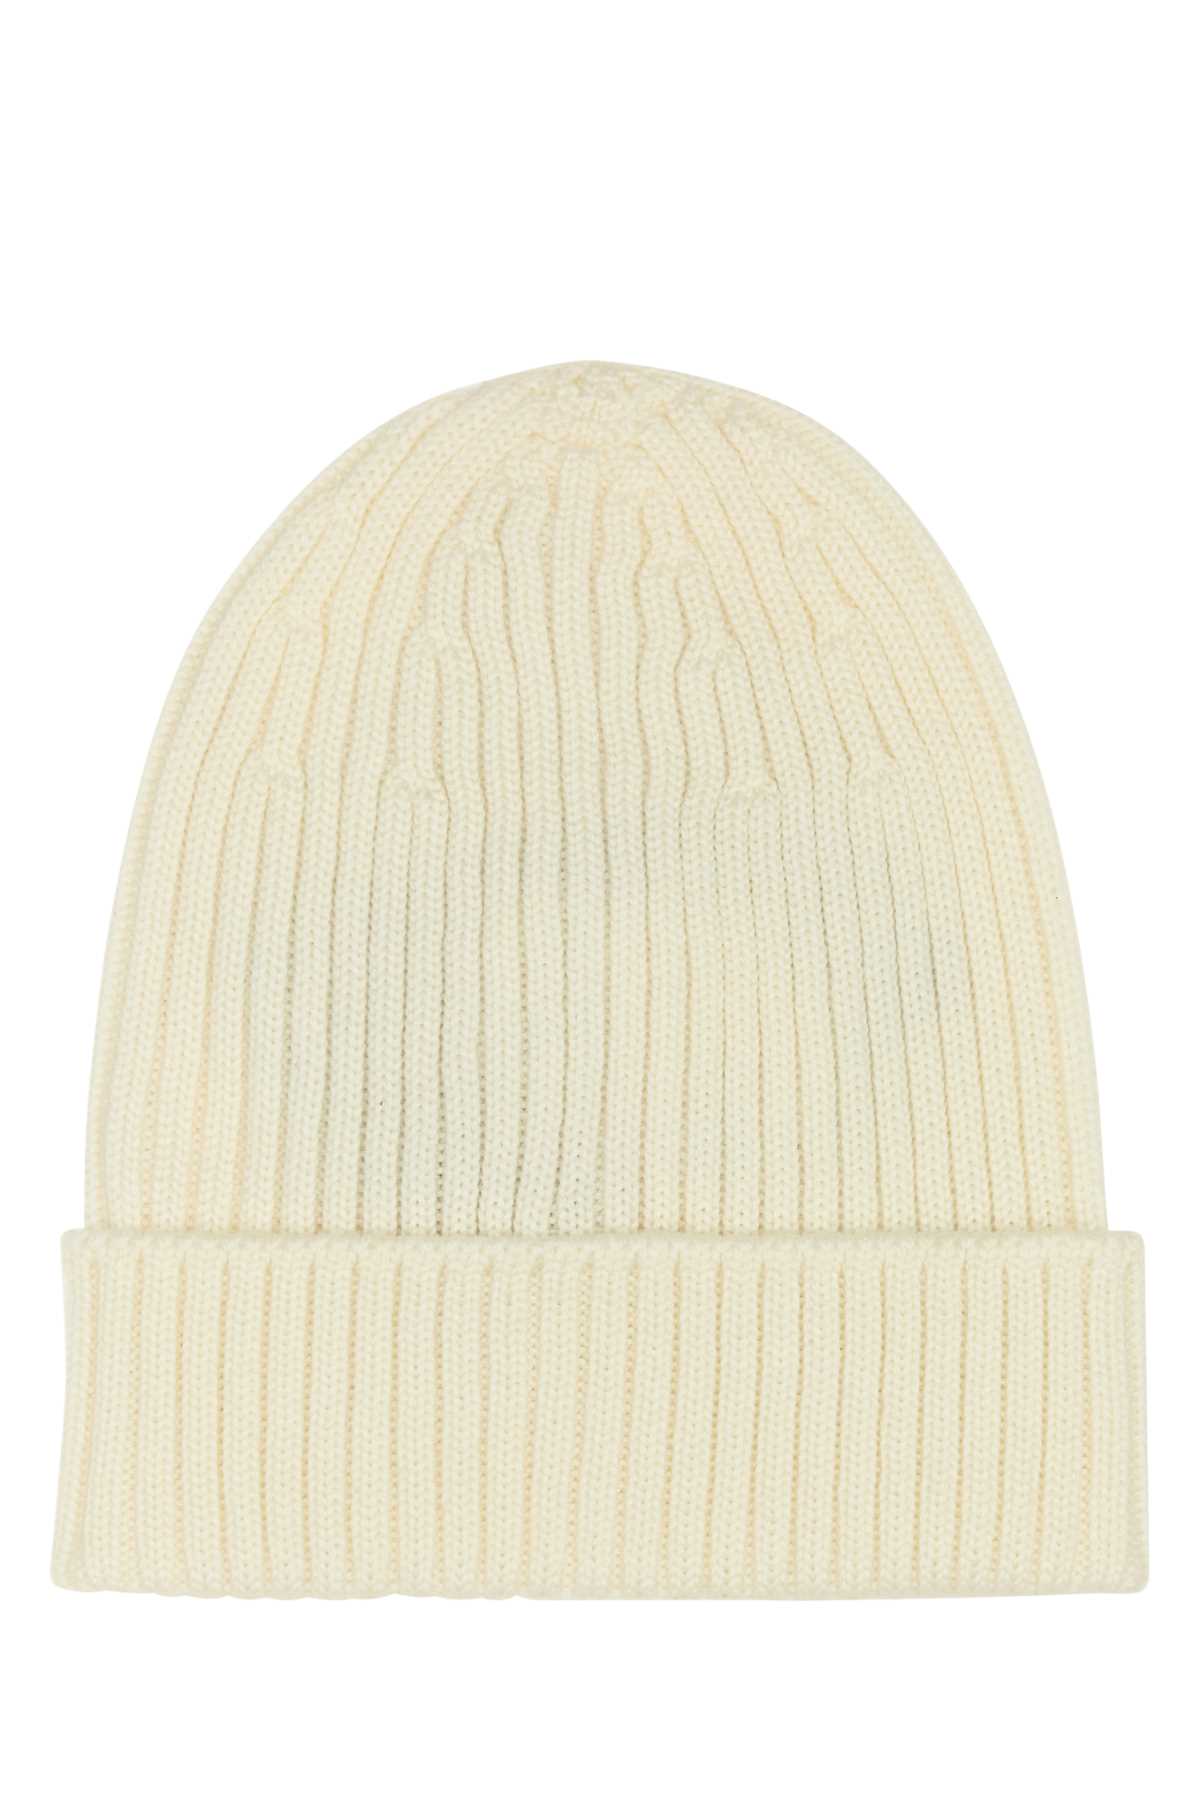 Prada White Wool Beanie Hat In Bianco